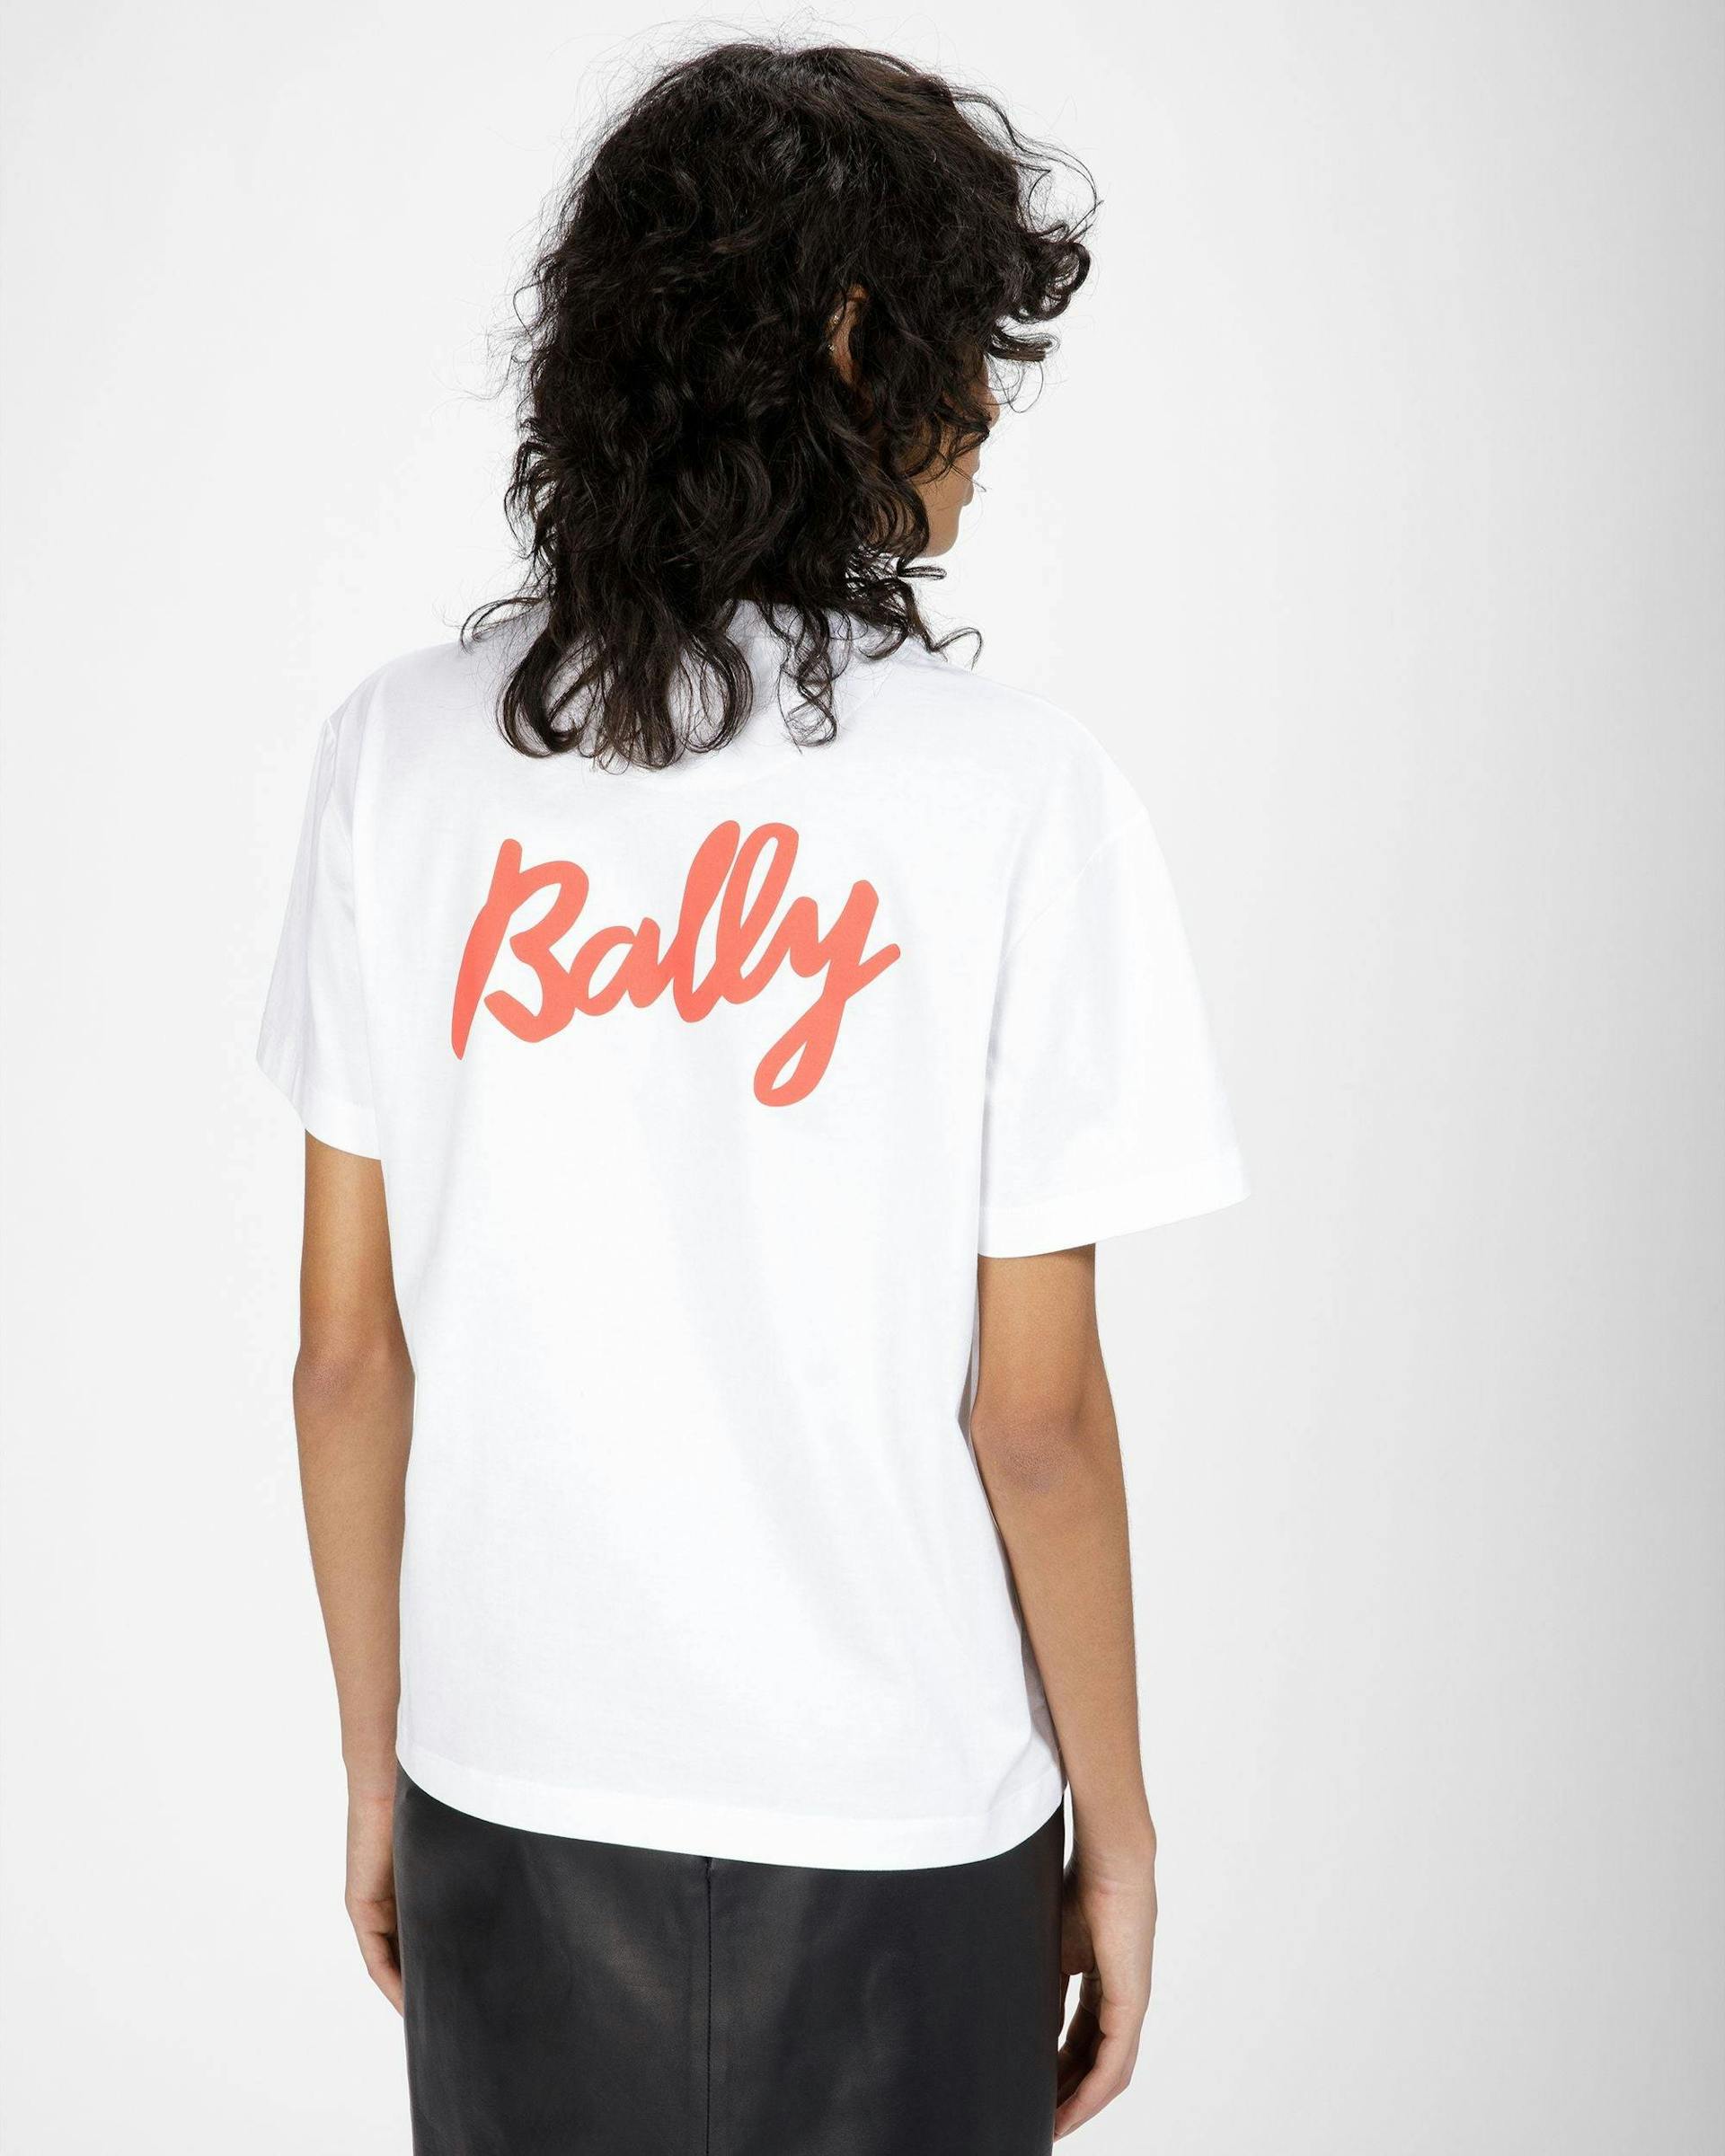 T-Shirt Aus Baumwolle In Weiß - Damen - Bally - 05